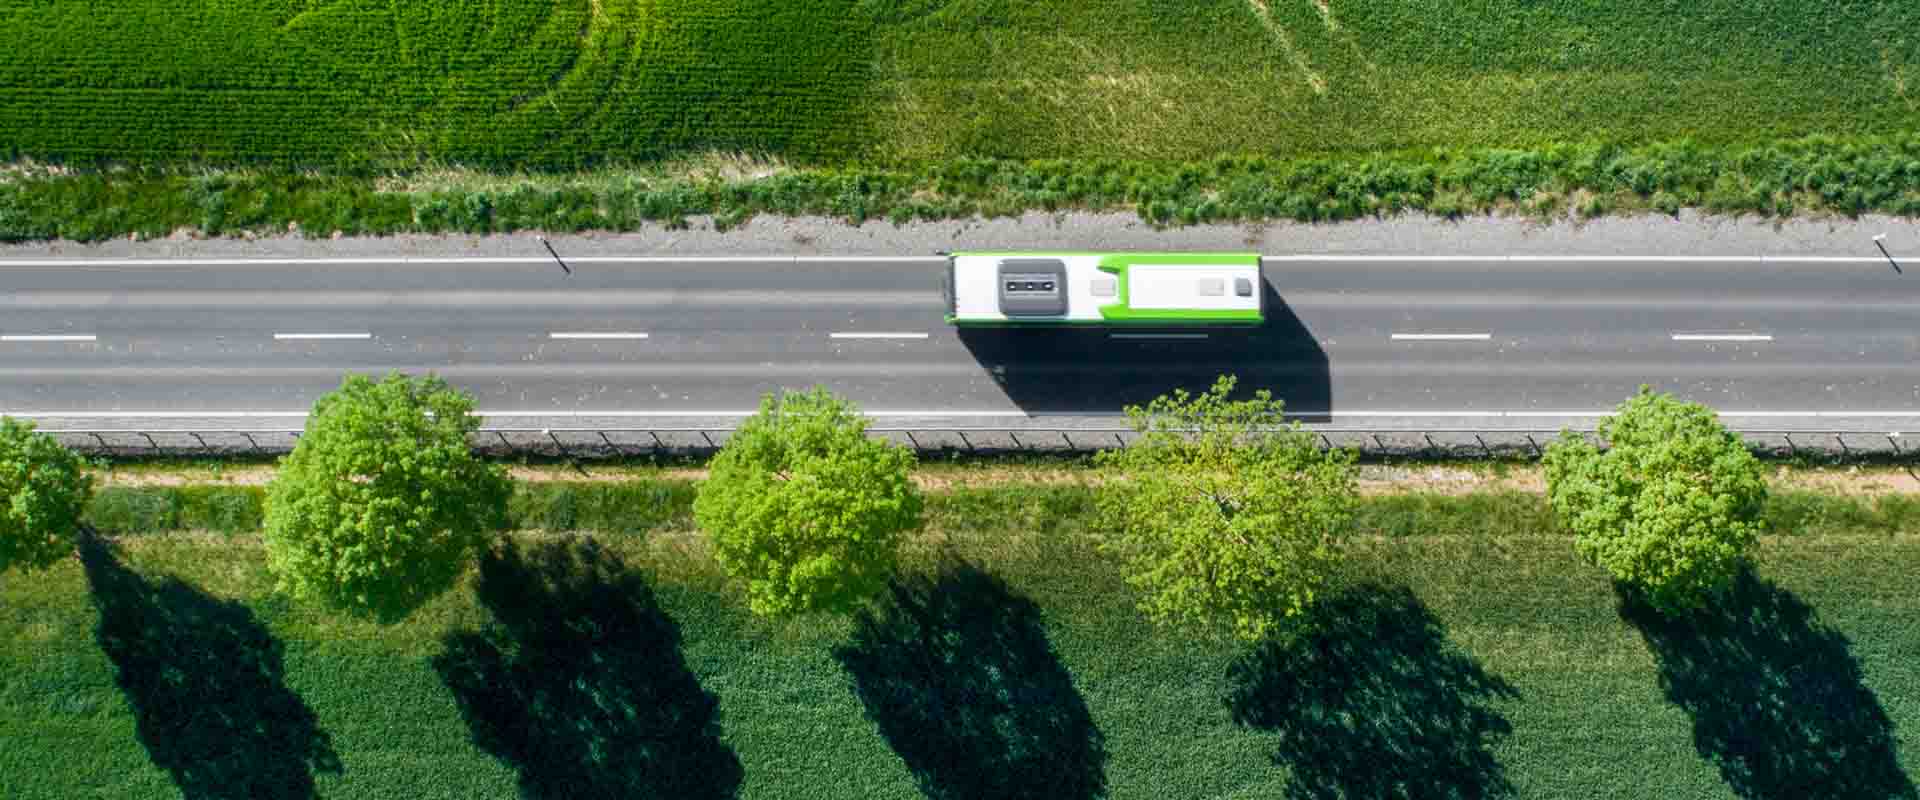 Studie »Mobilitätswende 2030«: ÖPNV der Zukunft ist flexibel und digital vernetzt, Fraunhofer IESE